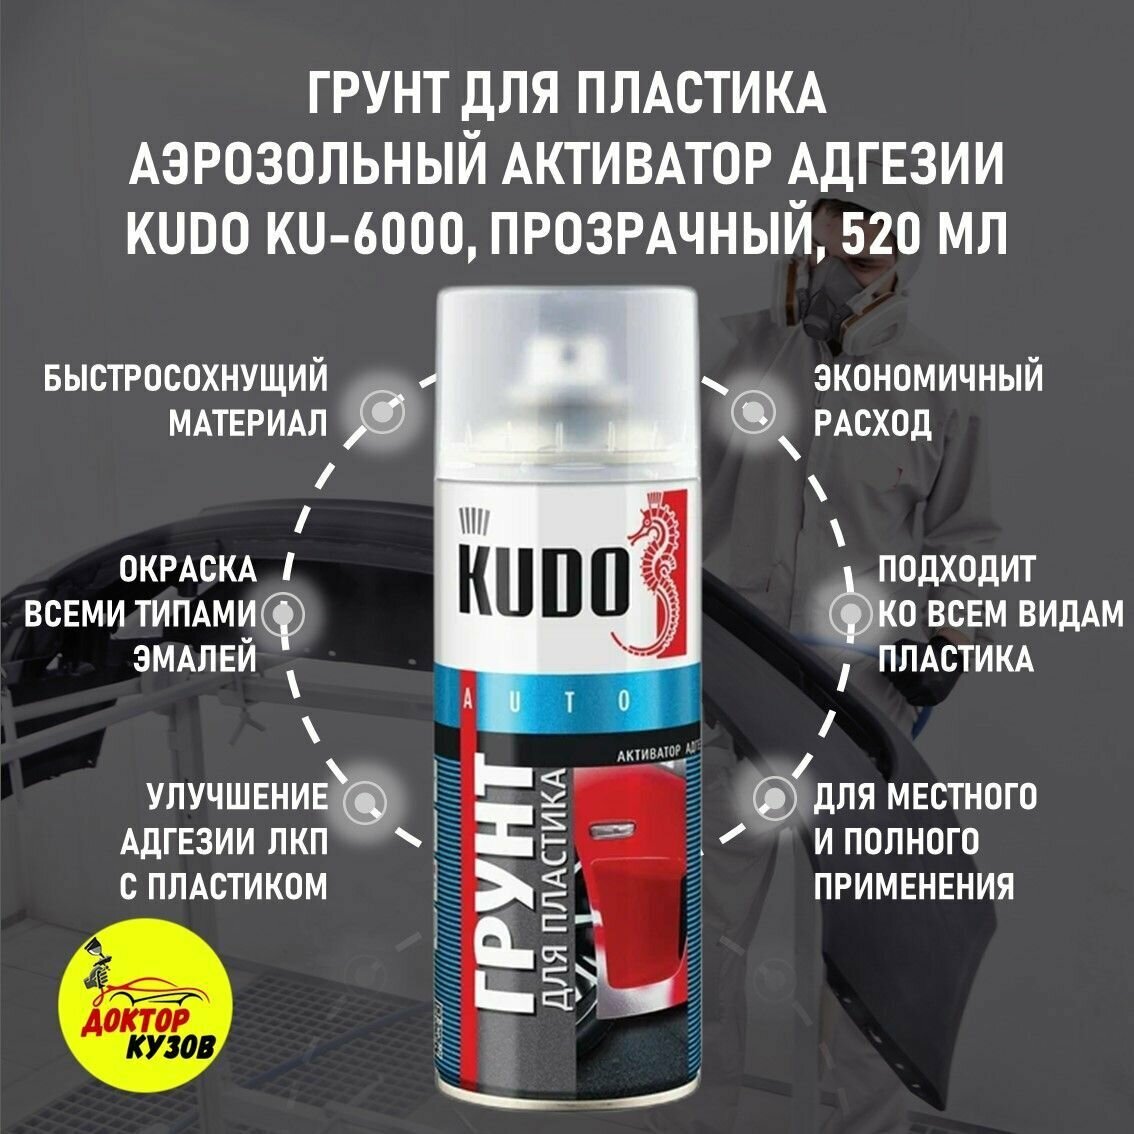 Грунт для пластика KUDO прозрачный быстросохнущий / Грунтовка по пластику для бампера авто / Активатор адгезии, 520 мл